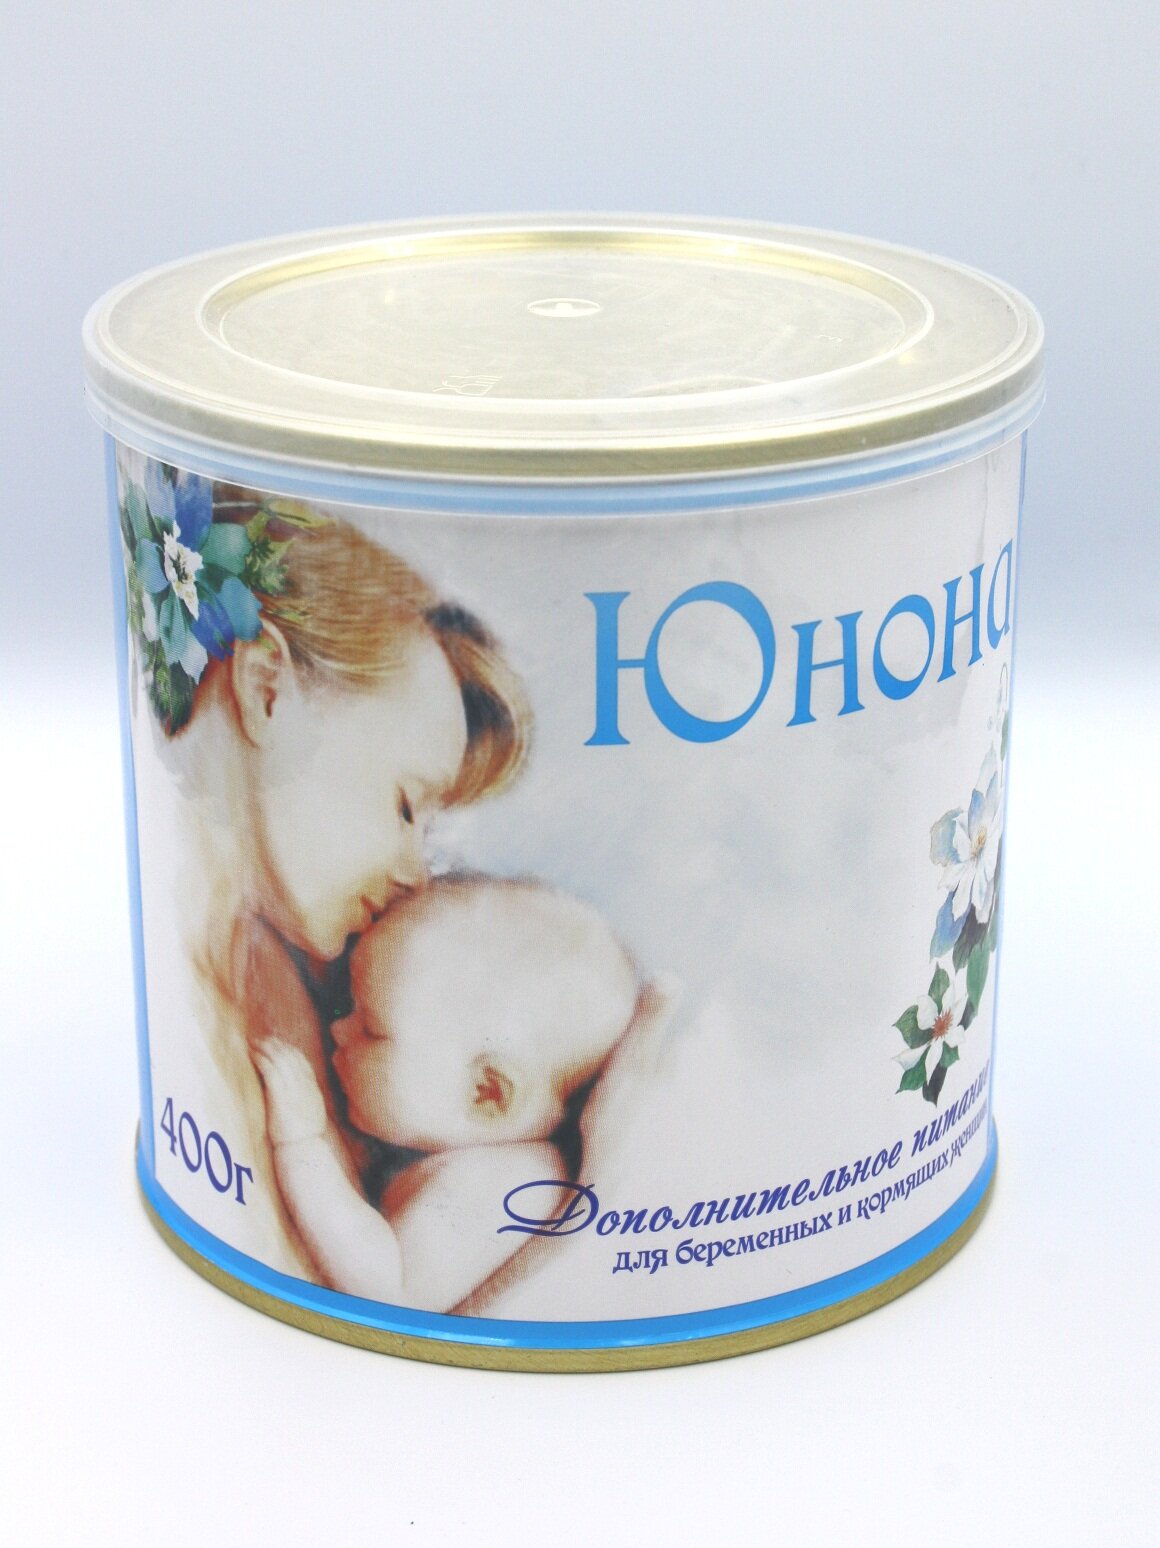 Смесь Витапром Юнона сухая для беременных и кормящих женщин 400 г ООО "Витапром" RU - фото №12